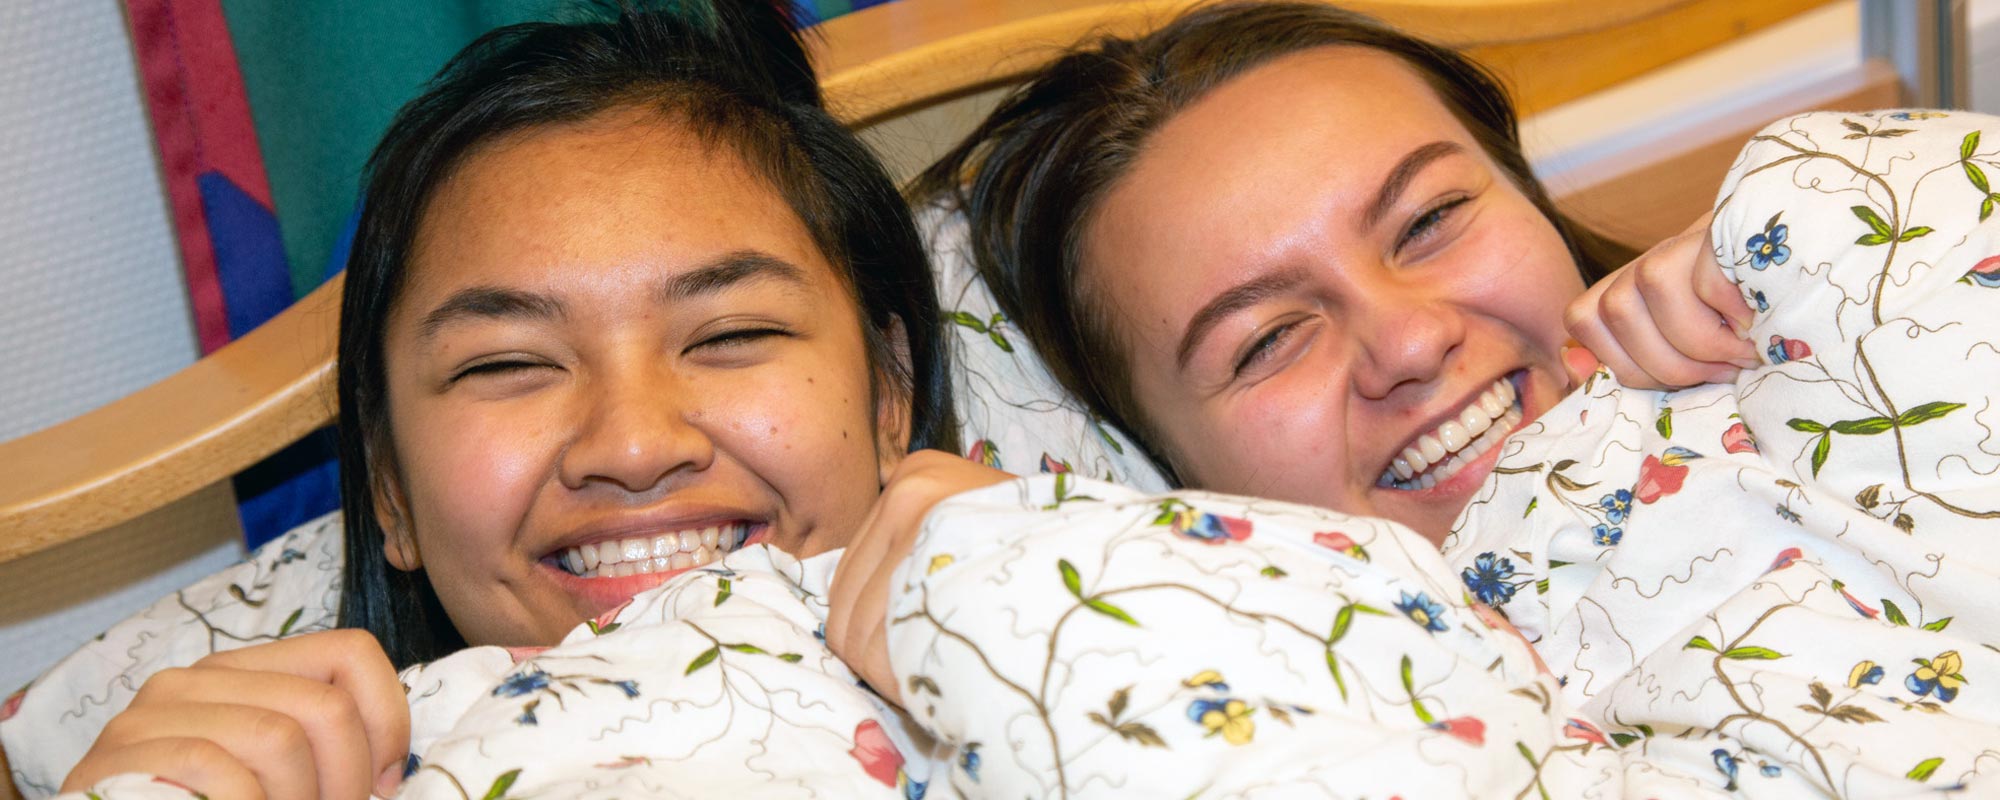 Bilde av to jenter som ligger i en seng og ler sammen - Kristen Videregående Skole Nordland - E-sport